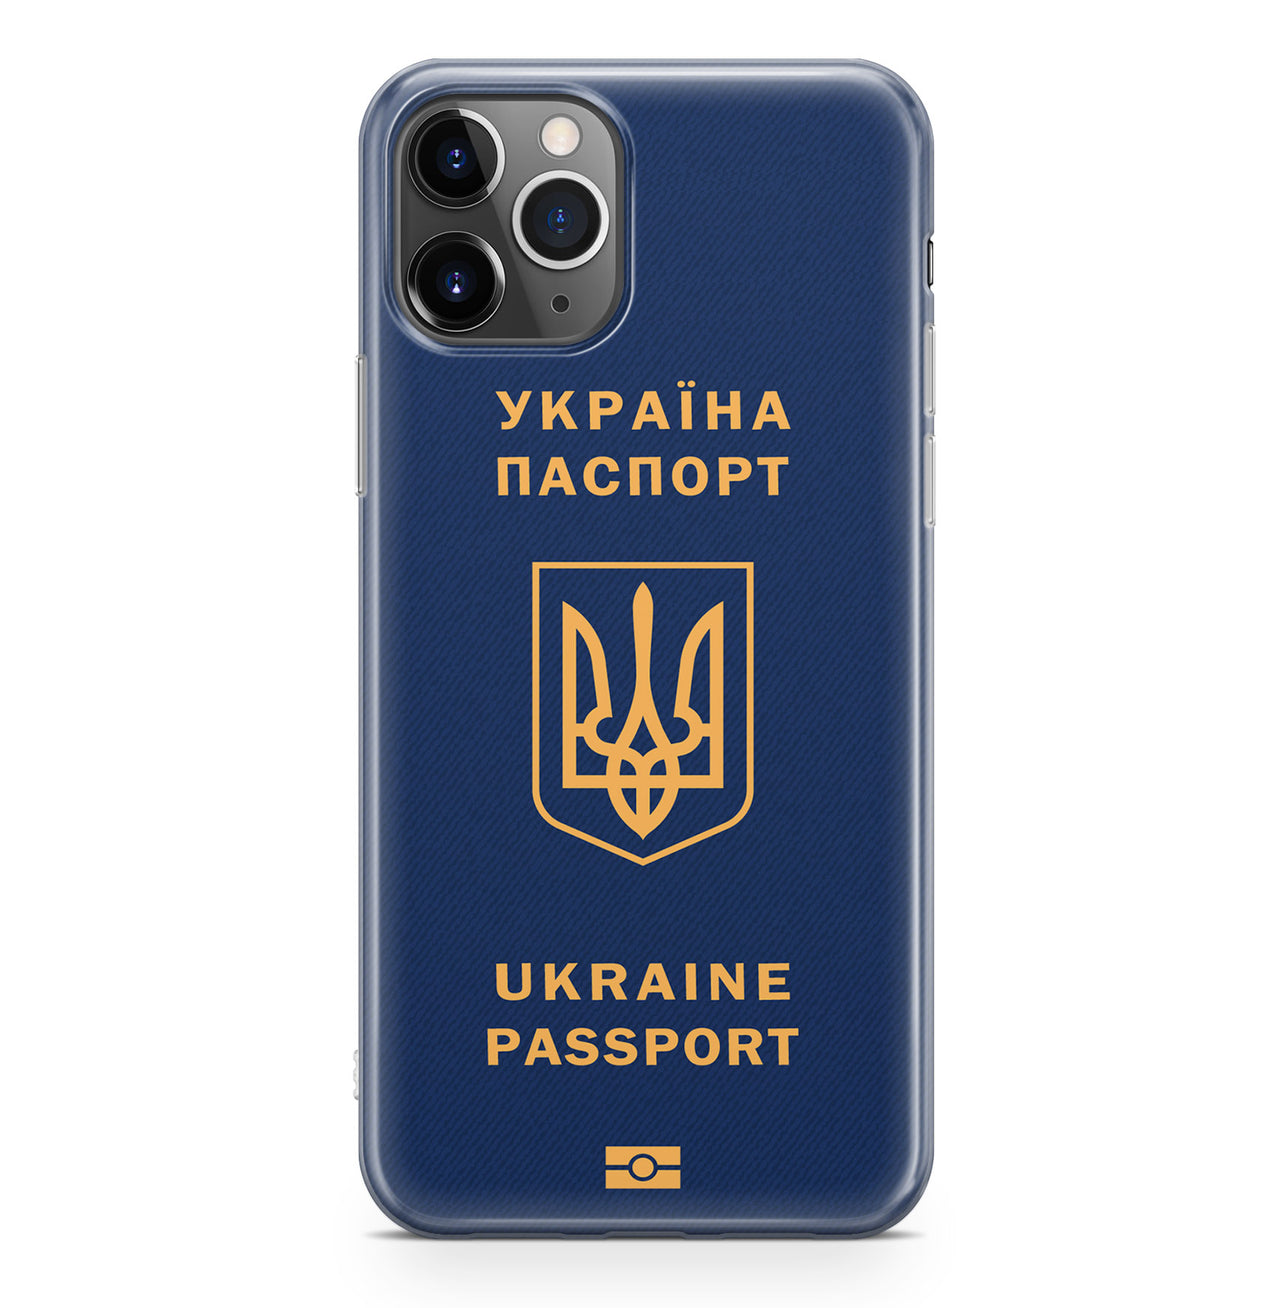 Ukraine Passport Designed iPhone Cases